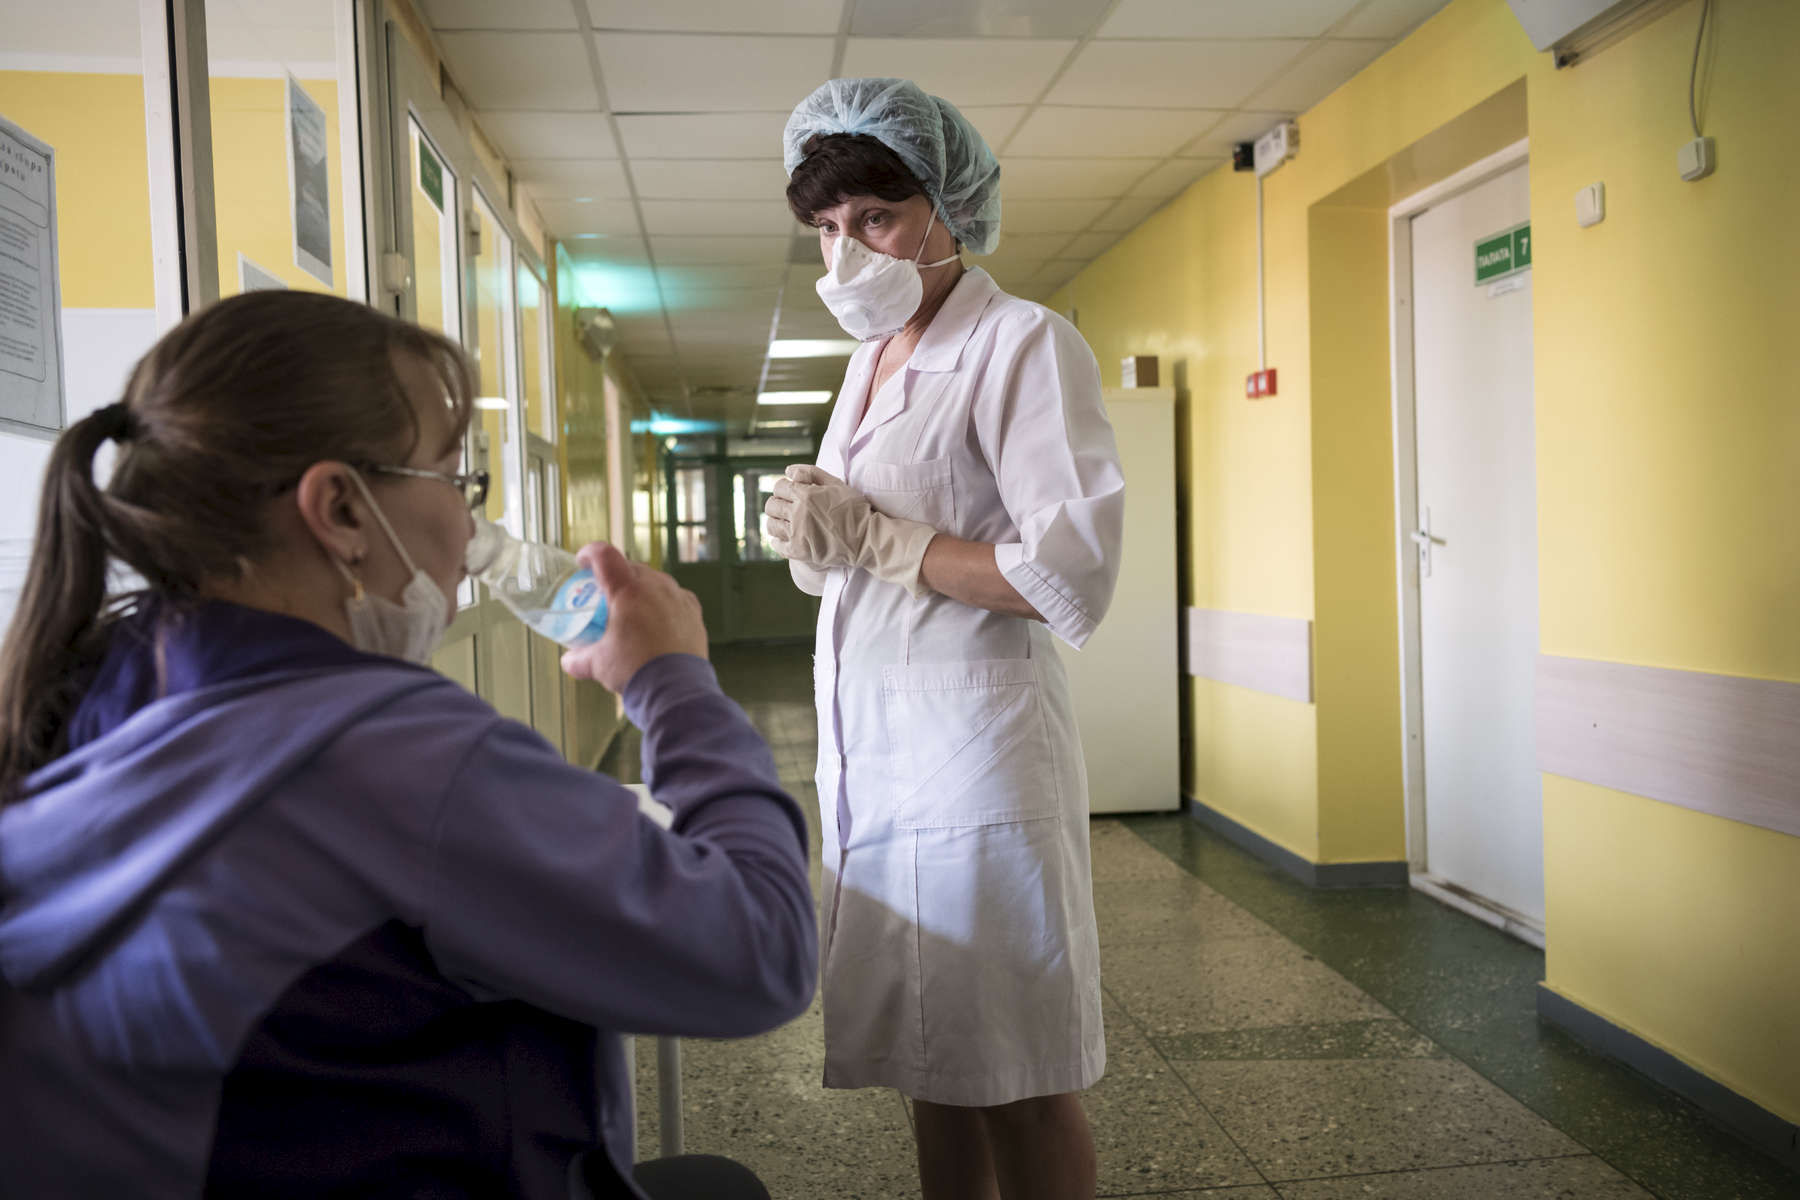 Tous les jours, les patients doivent prendre leur traitement devant une infirmière. Ce dernier peut durer 2 ans. Républicain de la Tb, Minsk, Bielorussie, 2018